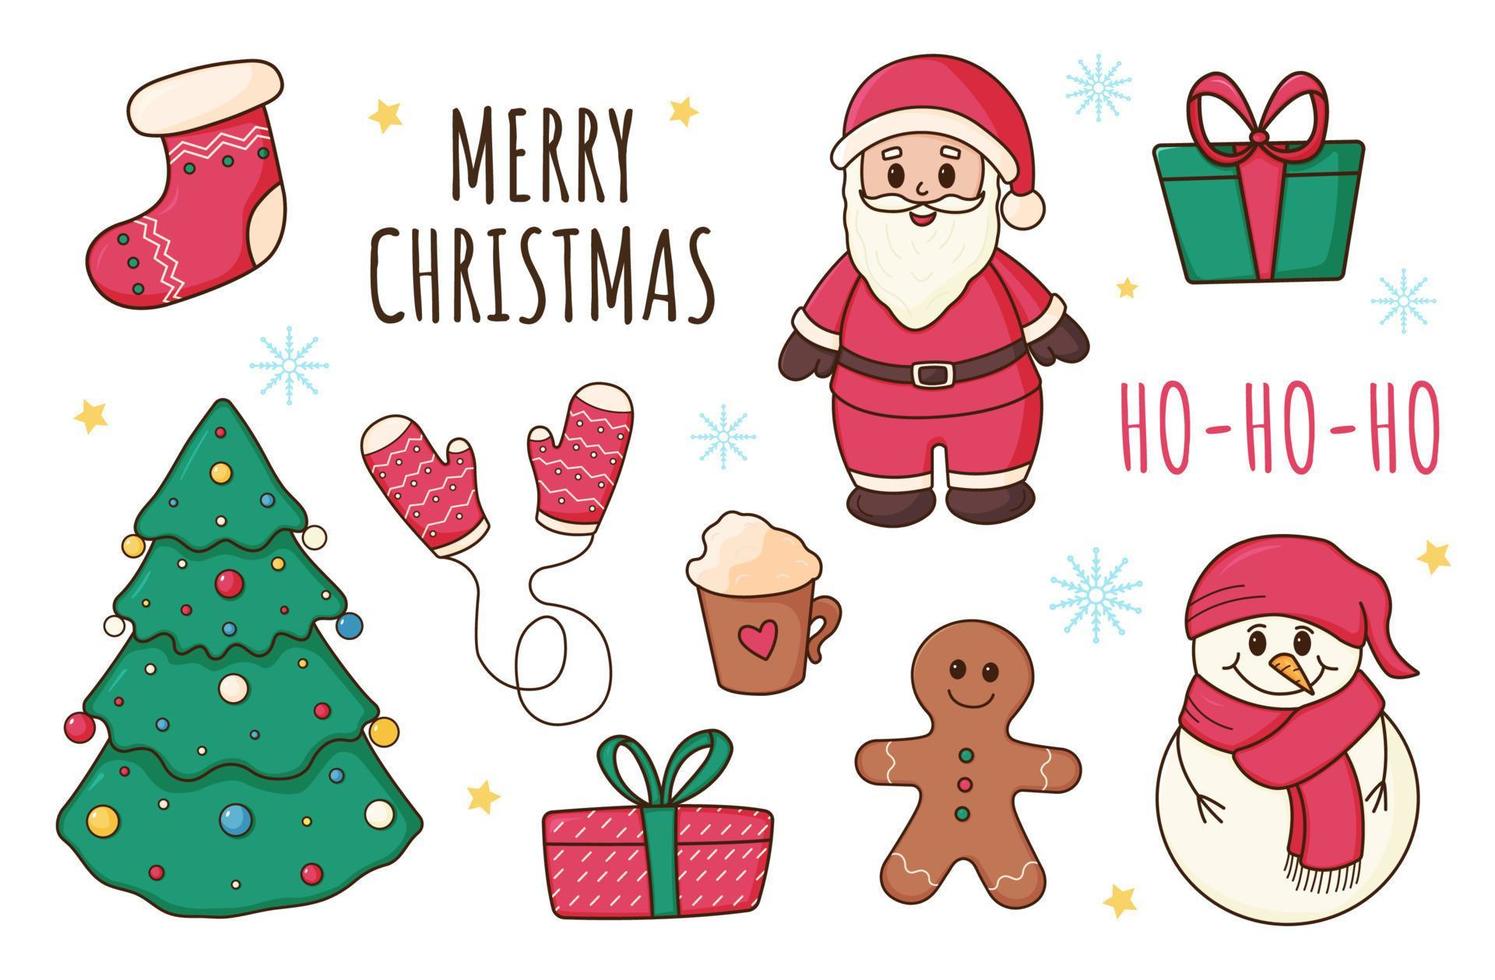 jul, ny år uppsättning av element, tecknad serie stil, jul träd, tomte, strumpa, pepparkaka, gåva, snöflingor, snögubbe, kakao mugg, vantar, vektor illustration